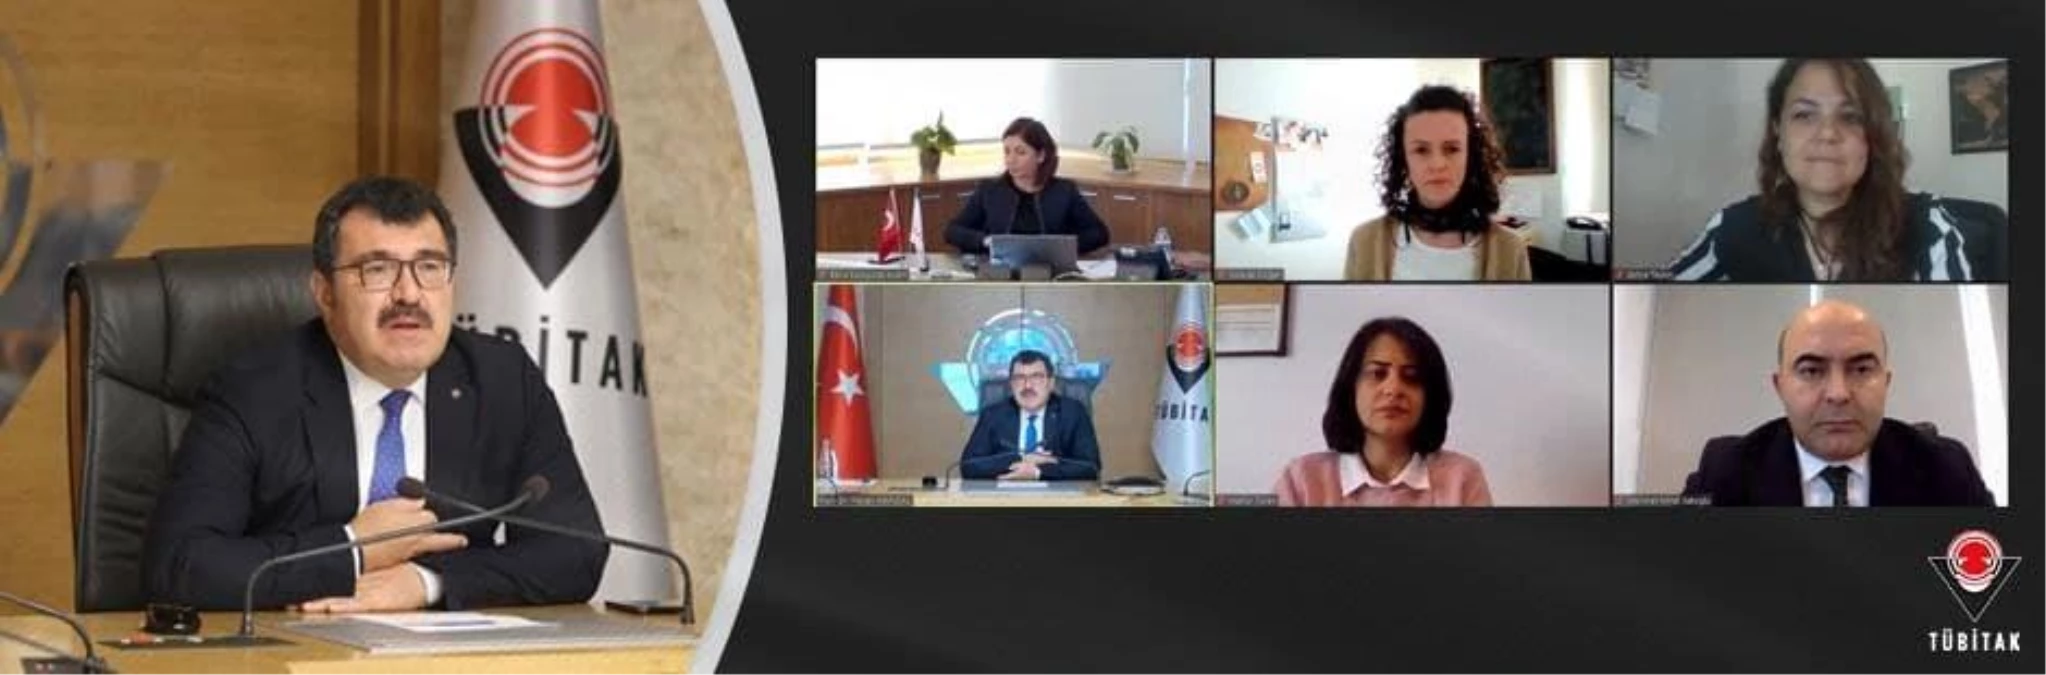 TÜBİTAK Başkanı Prof. Dr. Mandal, Aperta Türkiye Açık Arşivi\'nin Lansmanında 2022 Hedeflerini Açıkladı